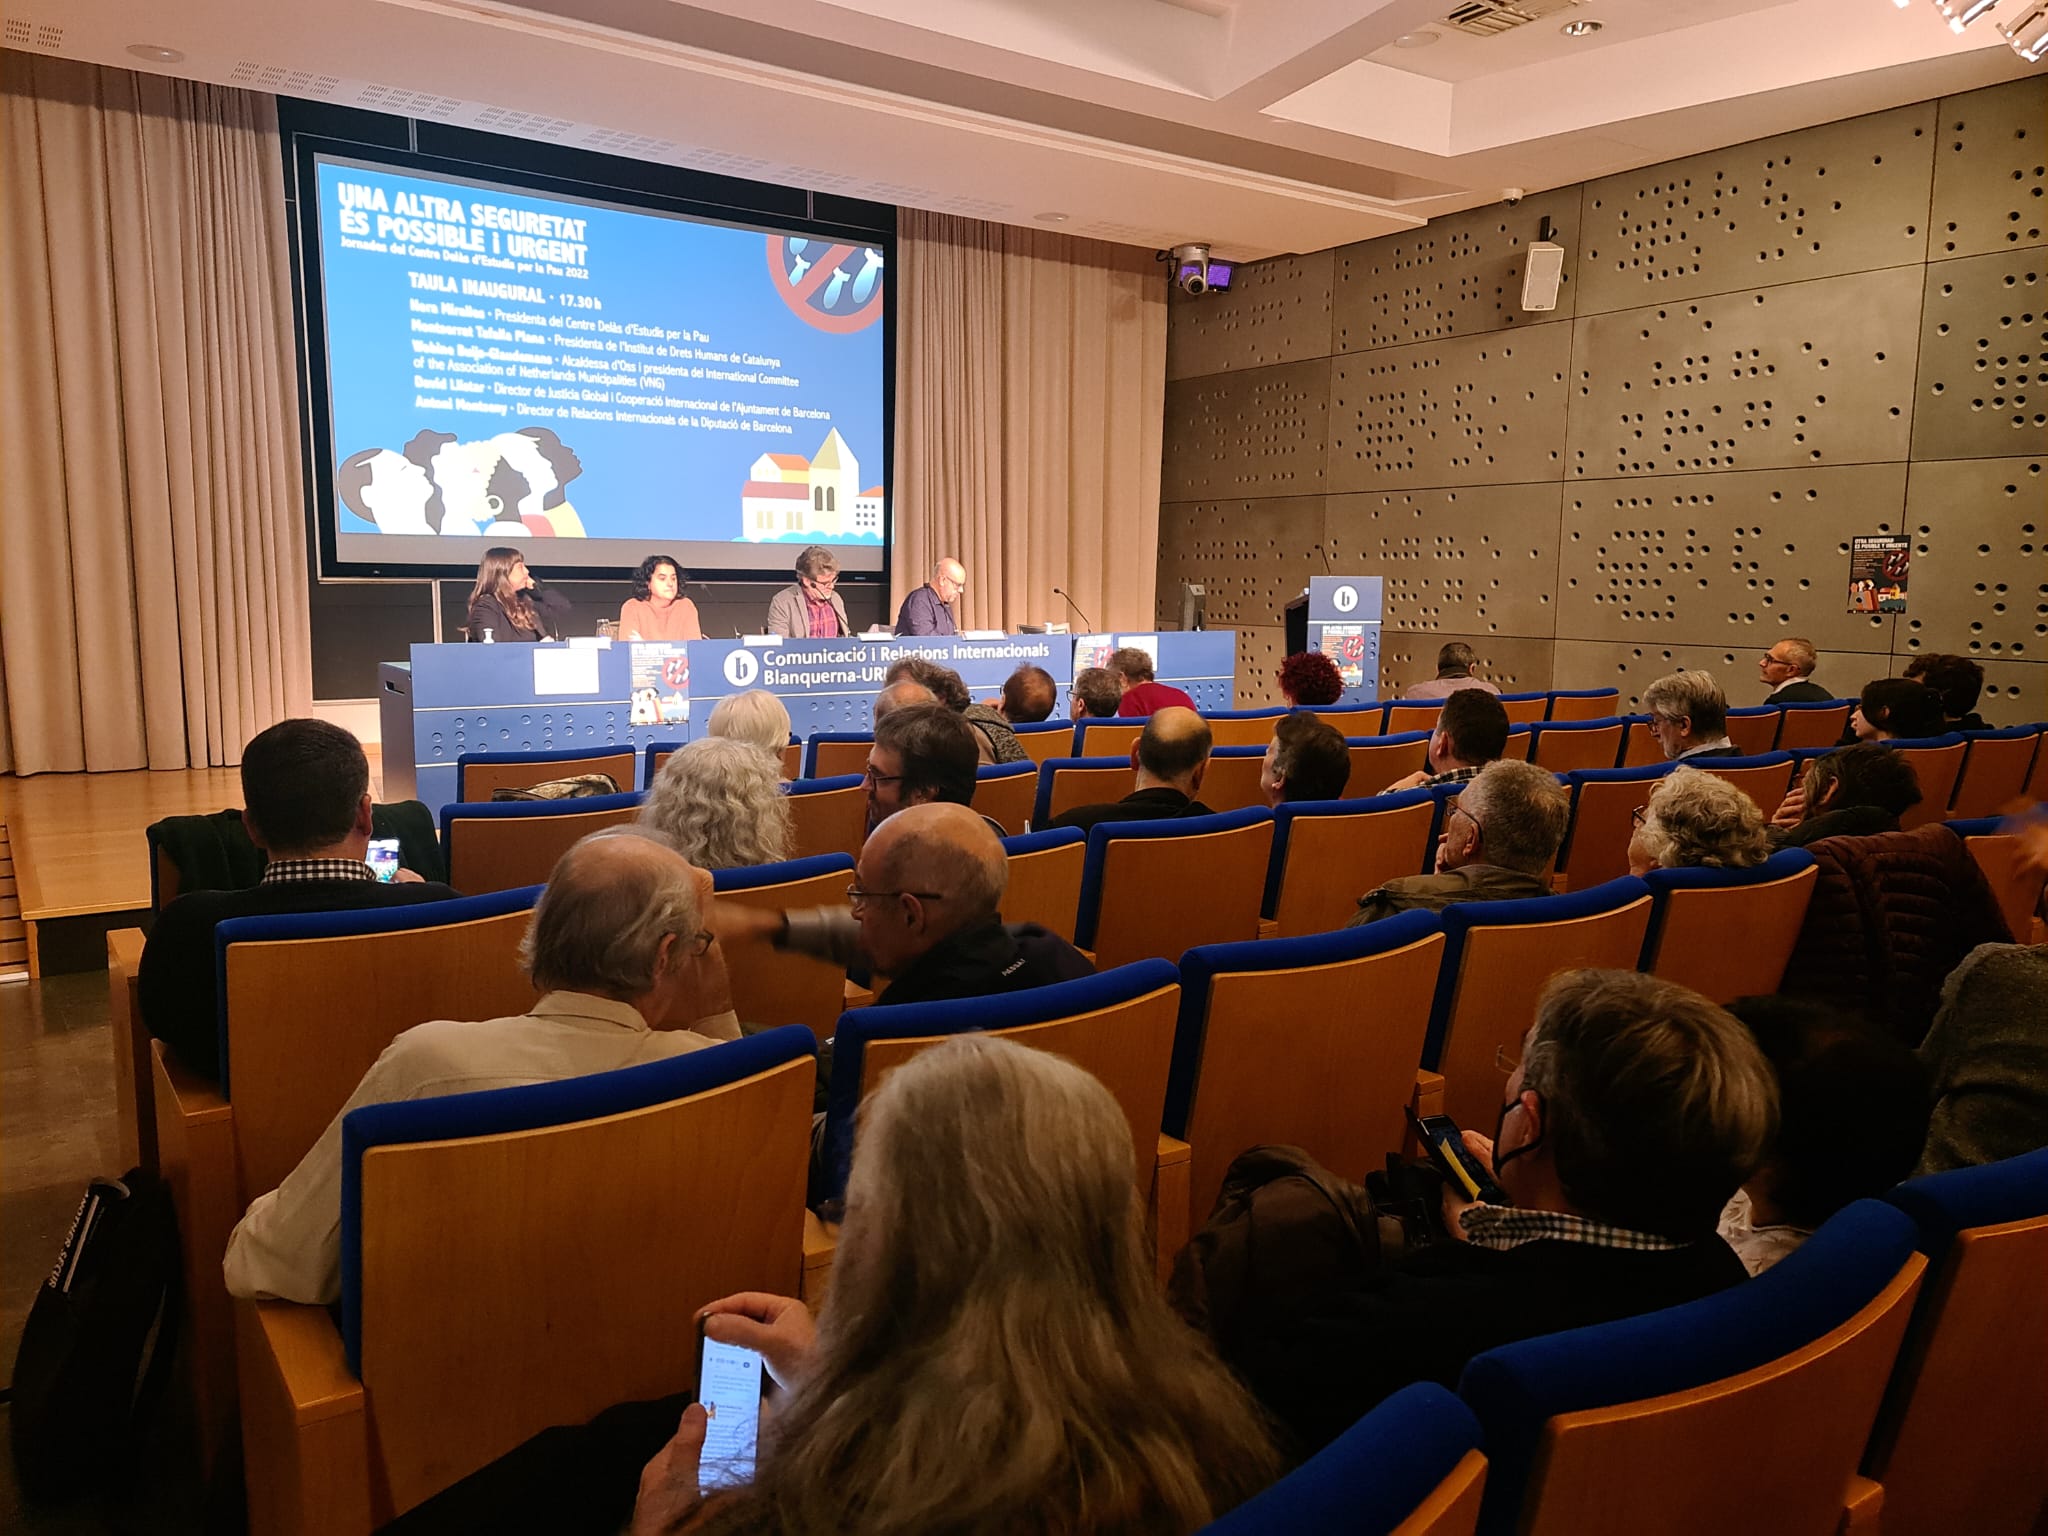 Les Jornades anuals del Centre Delàs reuneixen un centenar de persones per reflexionar i debatre sobre alternatives a la seguretat hegemònica